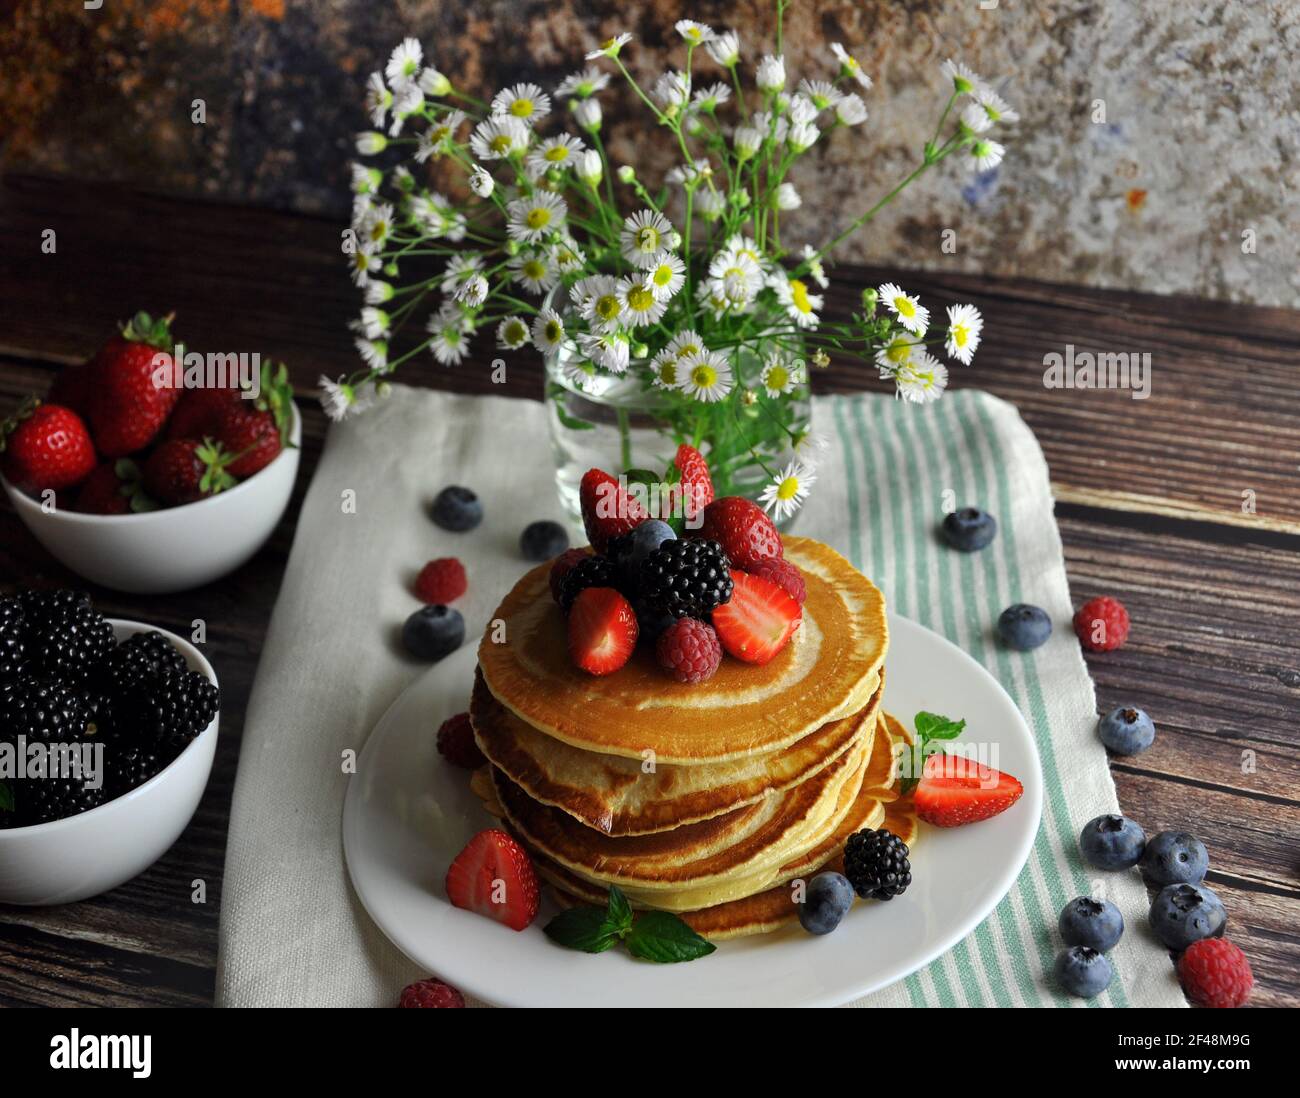 Pancake con frutti di bosco su un piatto bianco. Verticale. Vaso con fiori e frutta piccola. Foto Stock